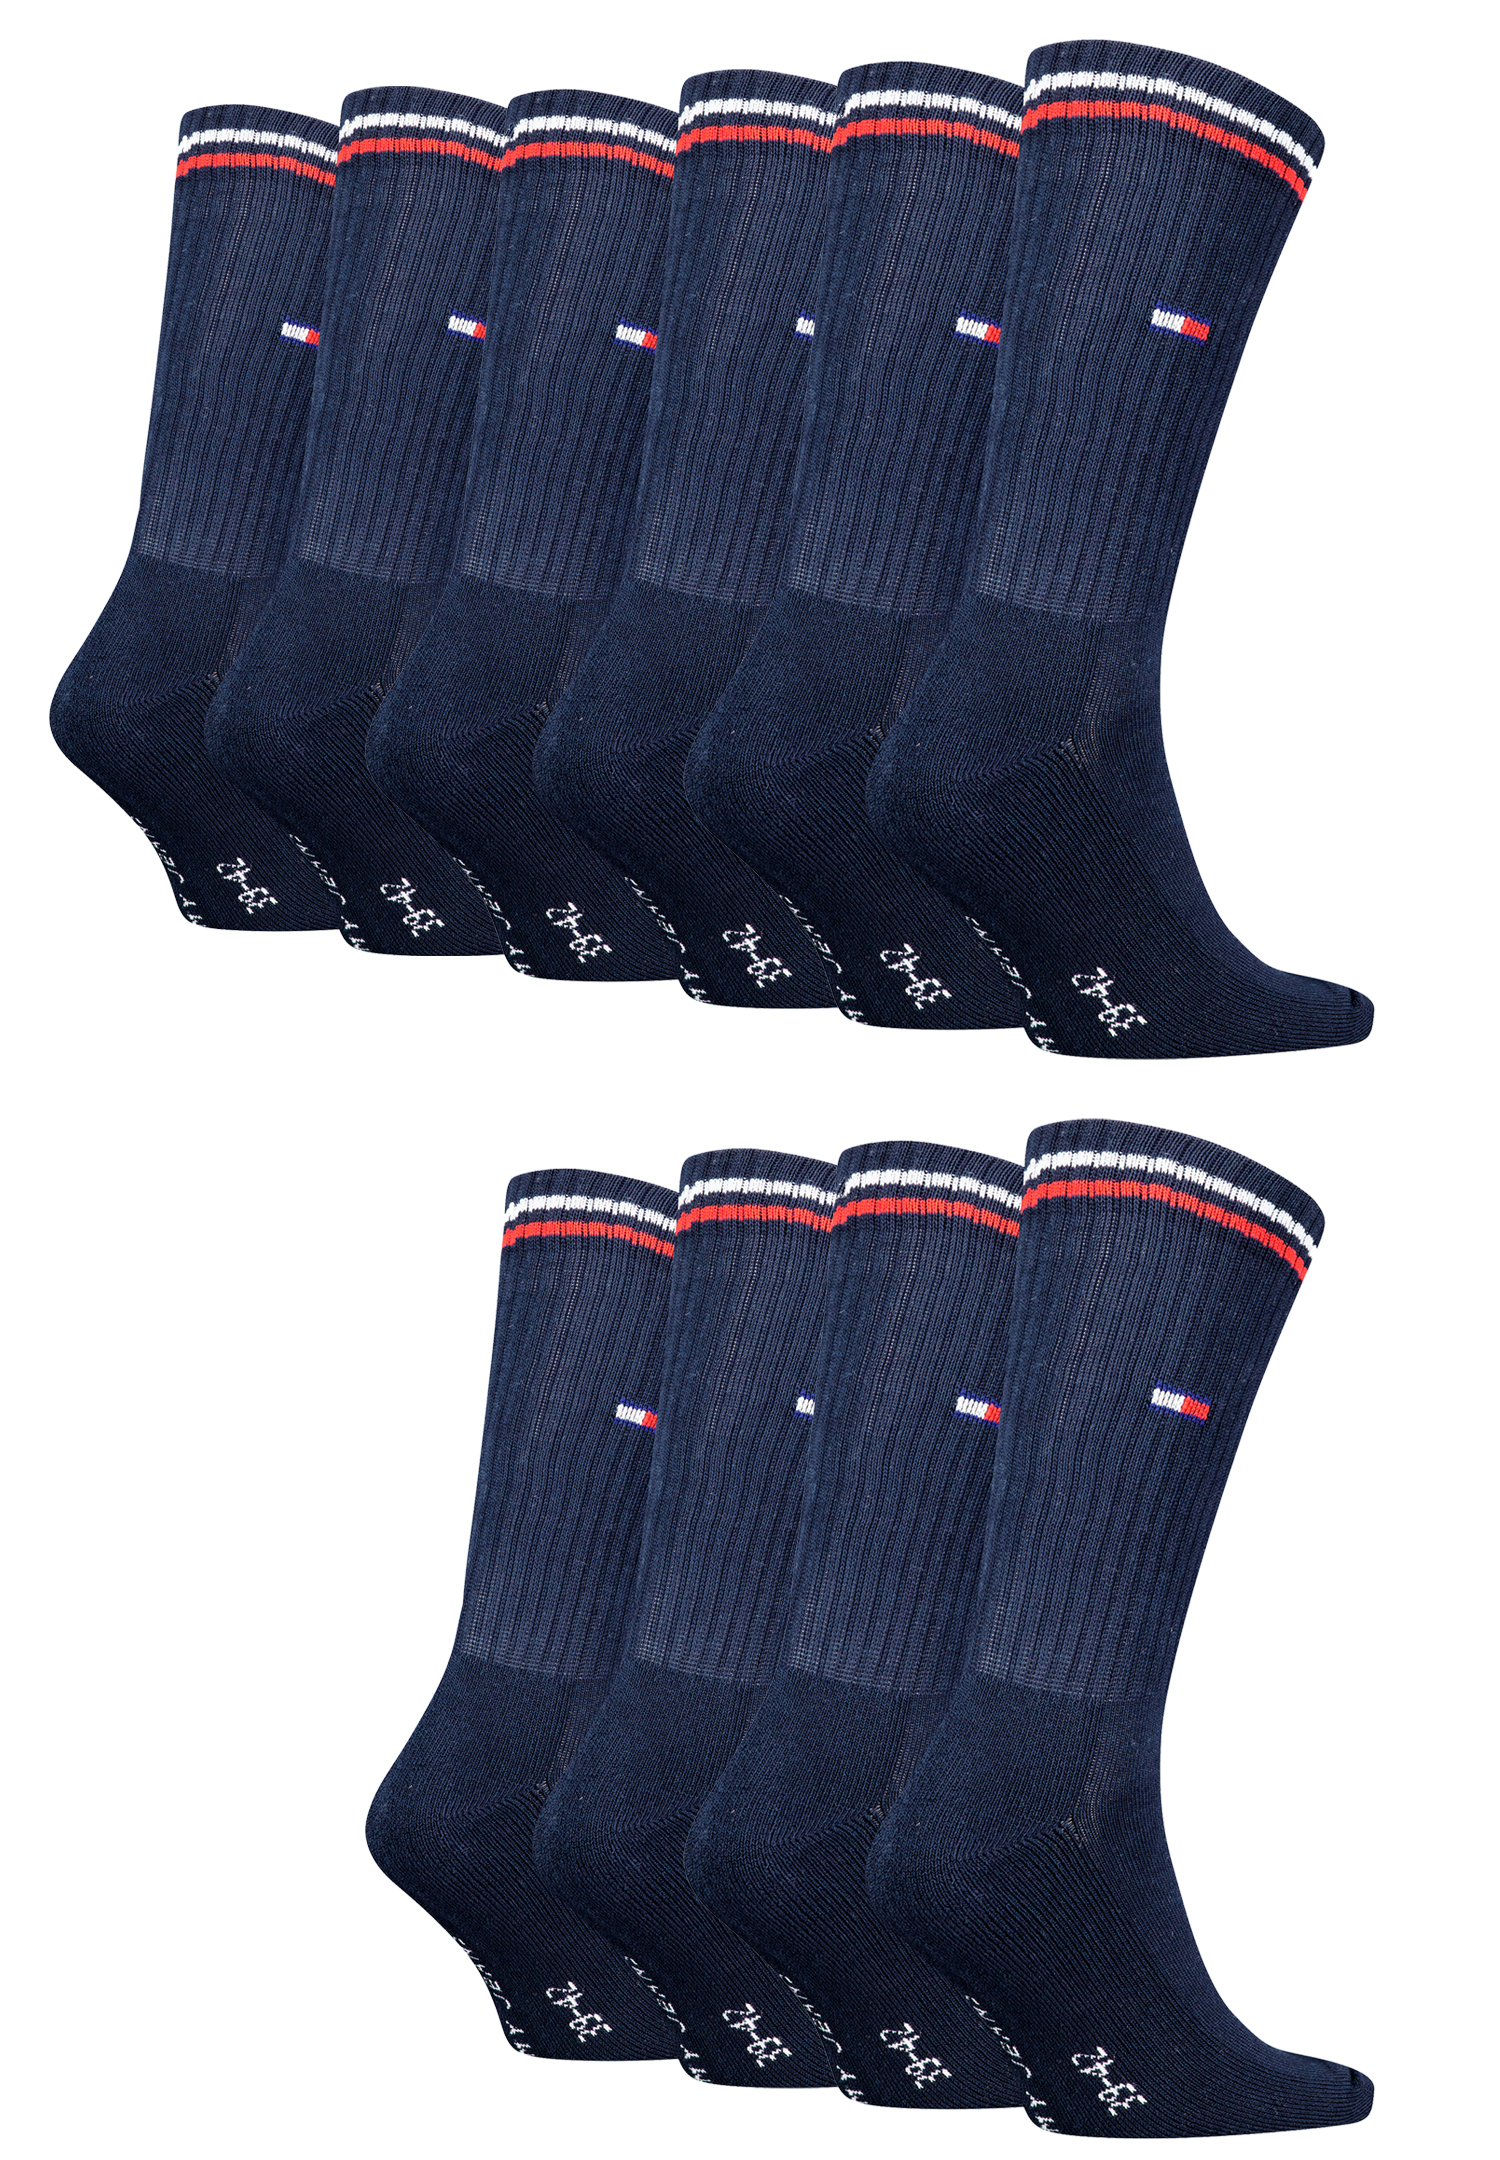 Tommy Hilfiger Lifestyle Crew Socken / lange Tennissocken für Damen & Herren 10-er Pack